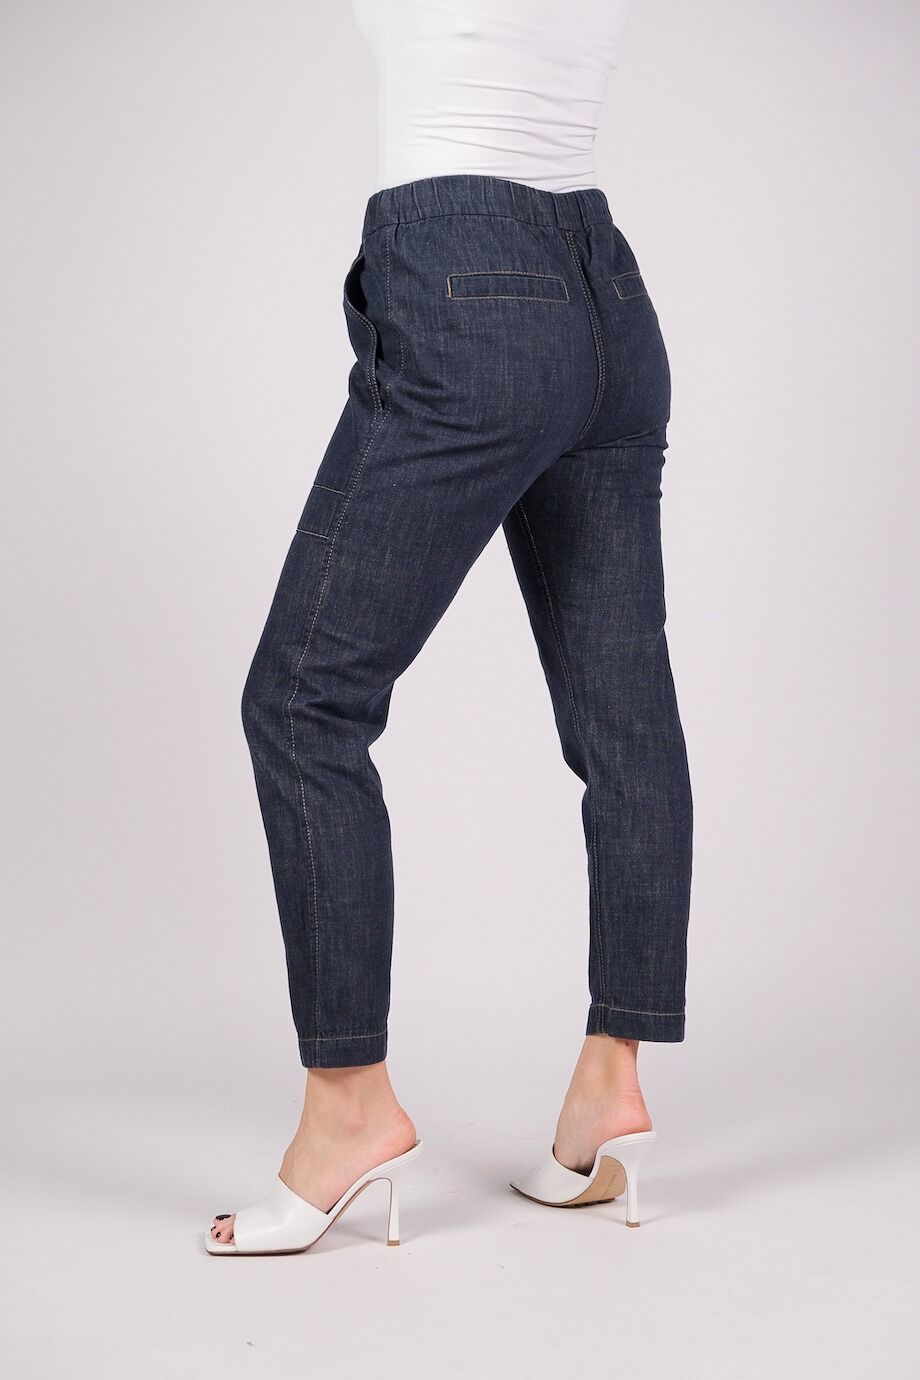 image 4 Джинсовые брюки темно-синего цвета на резинке